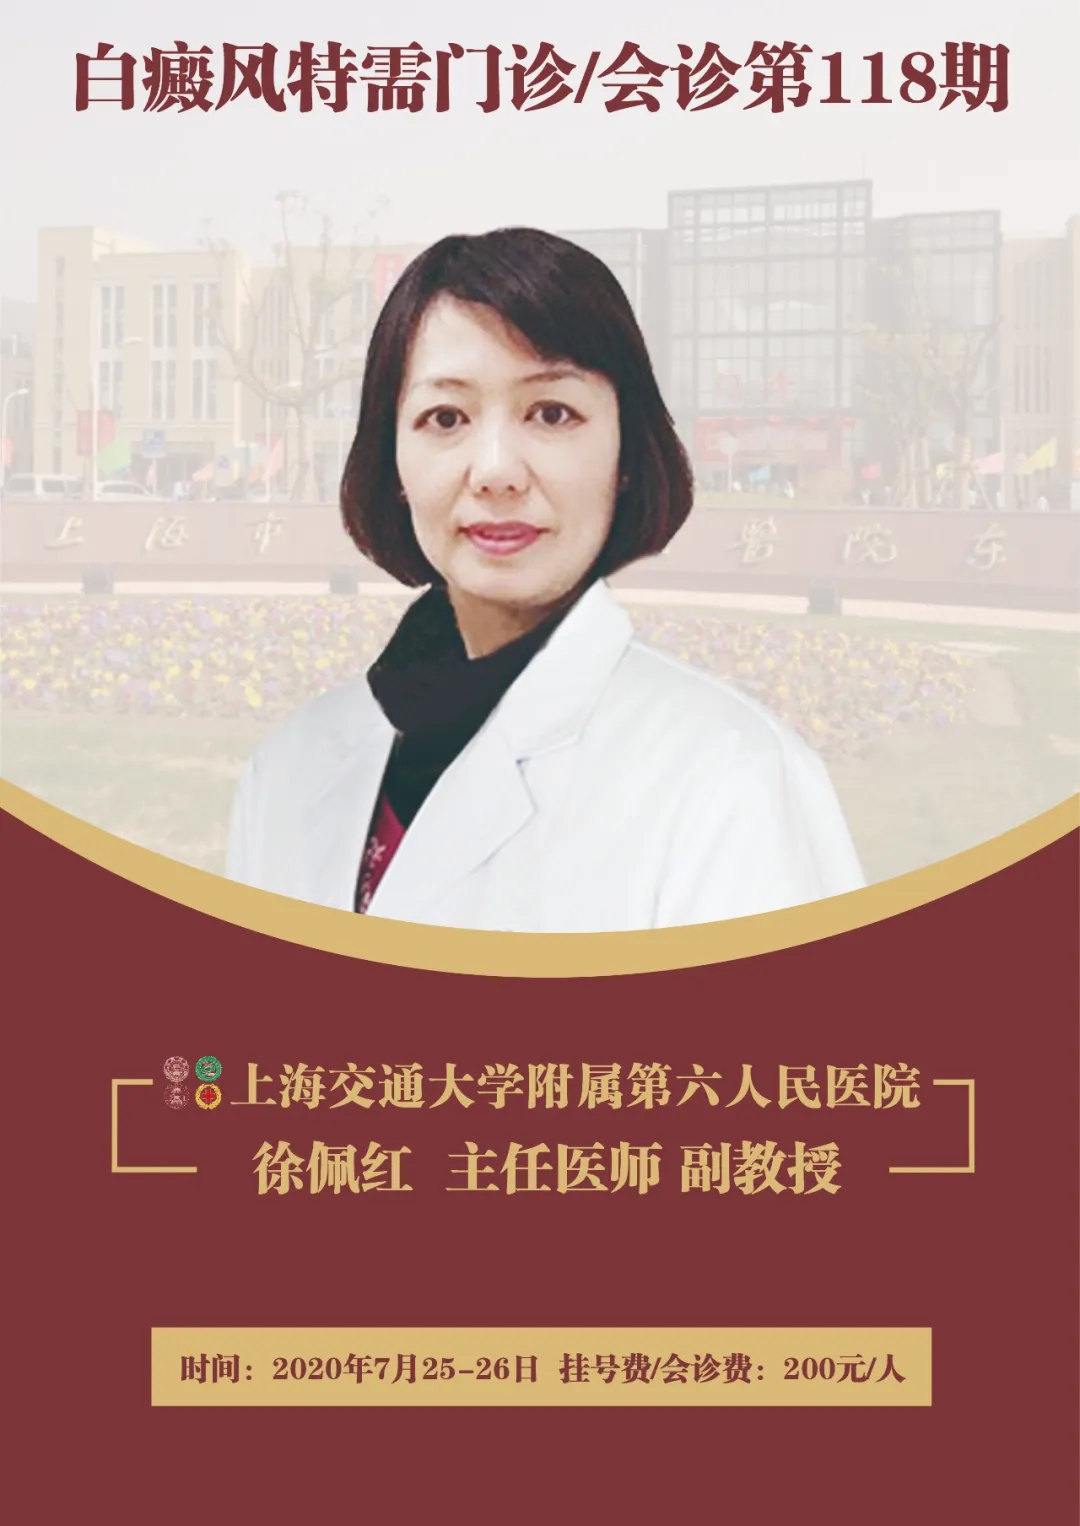 7月25-26日上海第六人民医院徐佩红